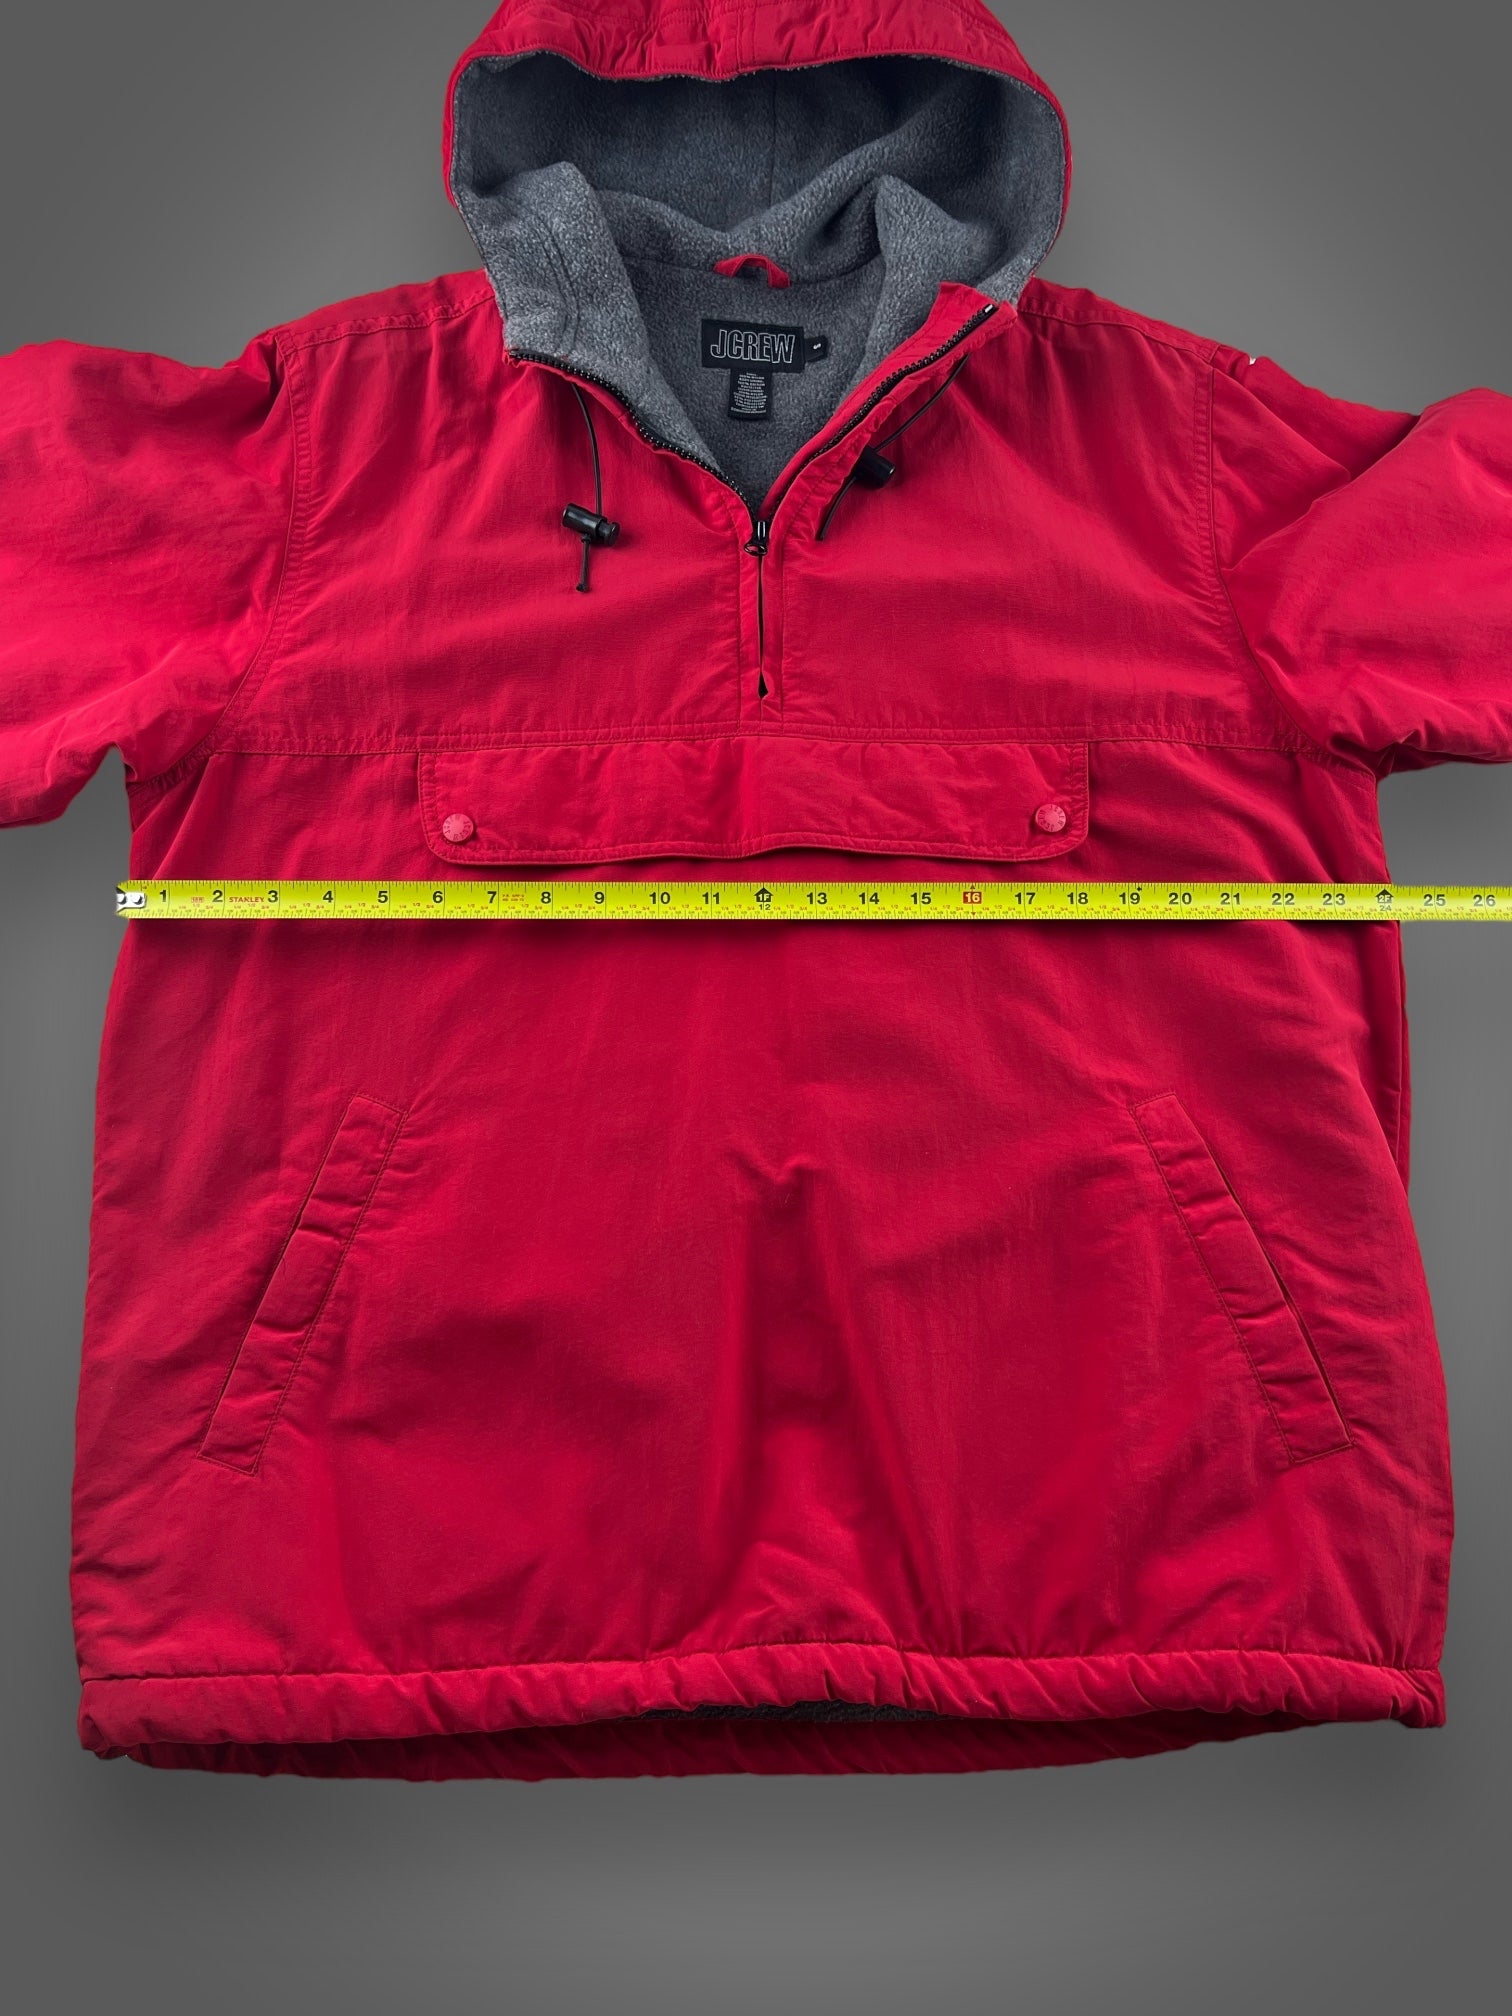 90s JCREW fleece lined hooded pullover jacket fits XL